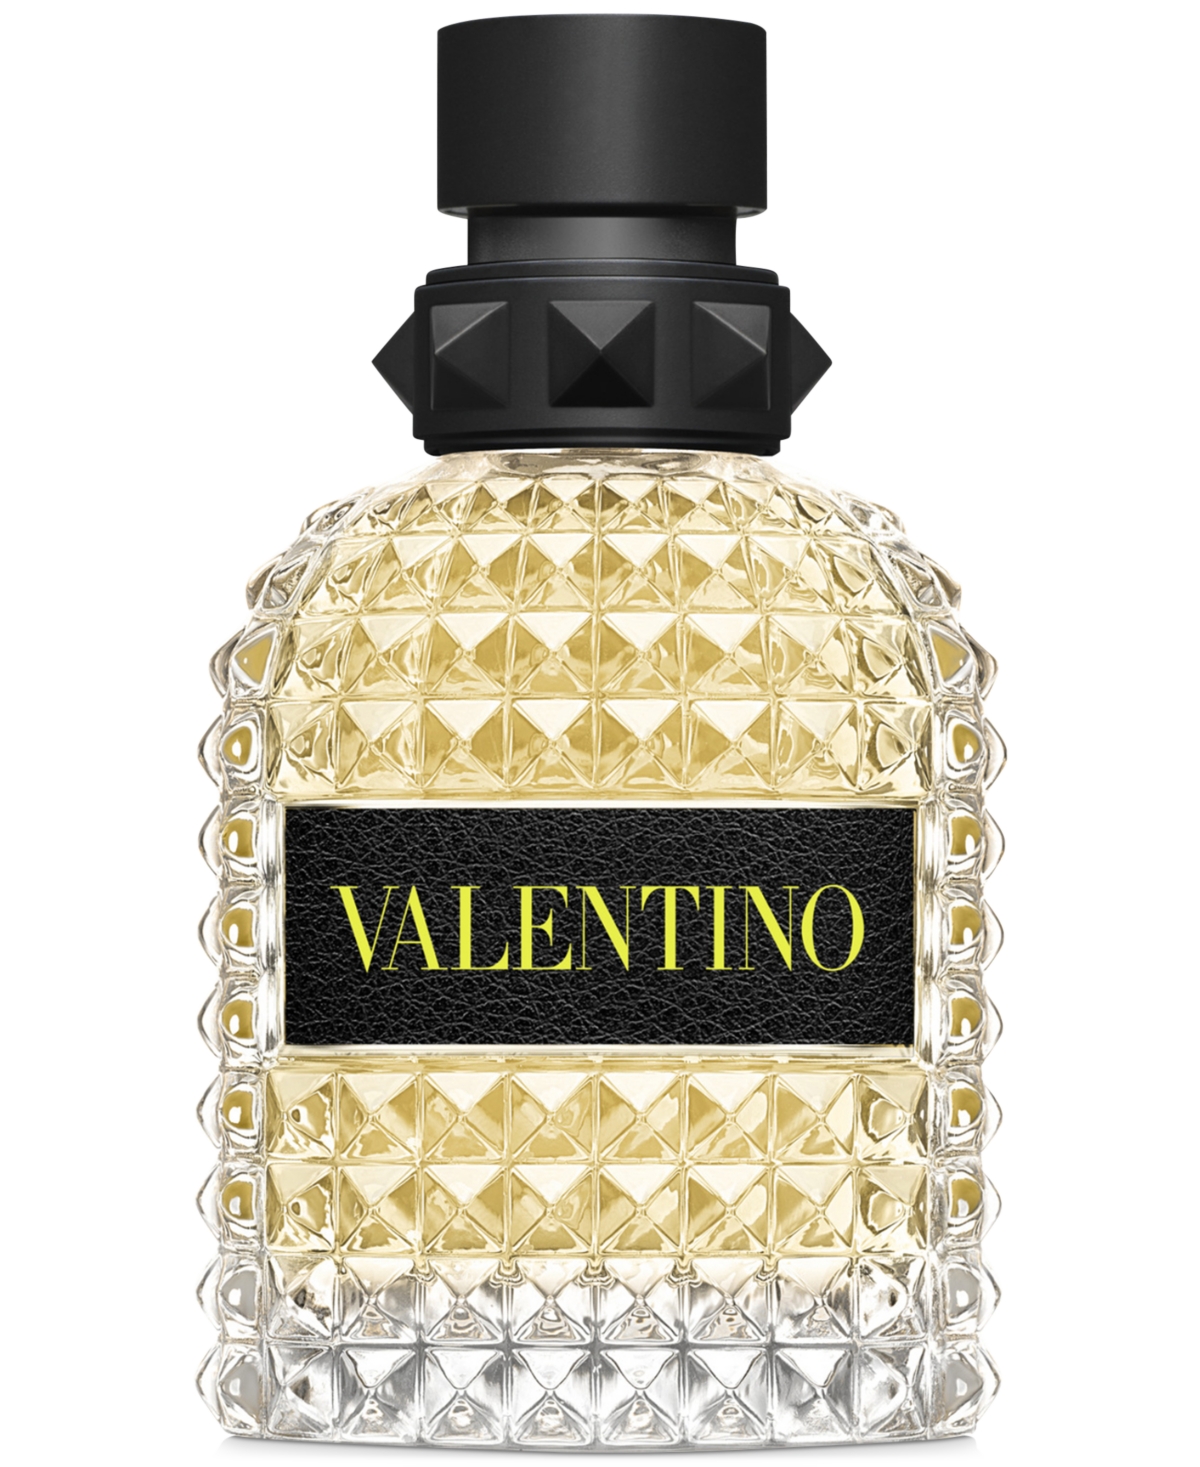 Valentino Uomo Born in Roma Yellow Dream Eau de Toilette Spray